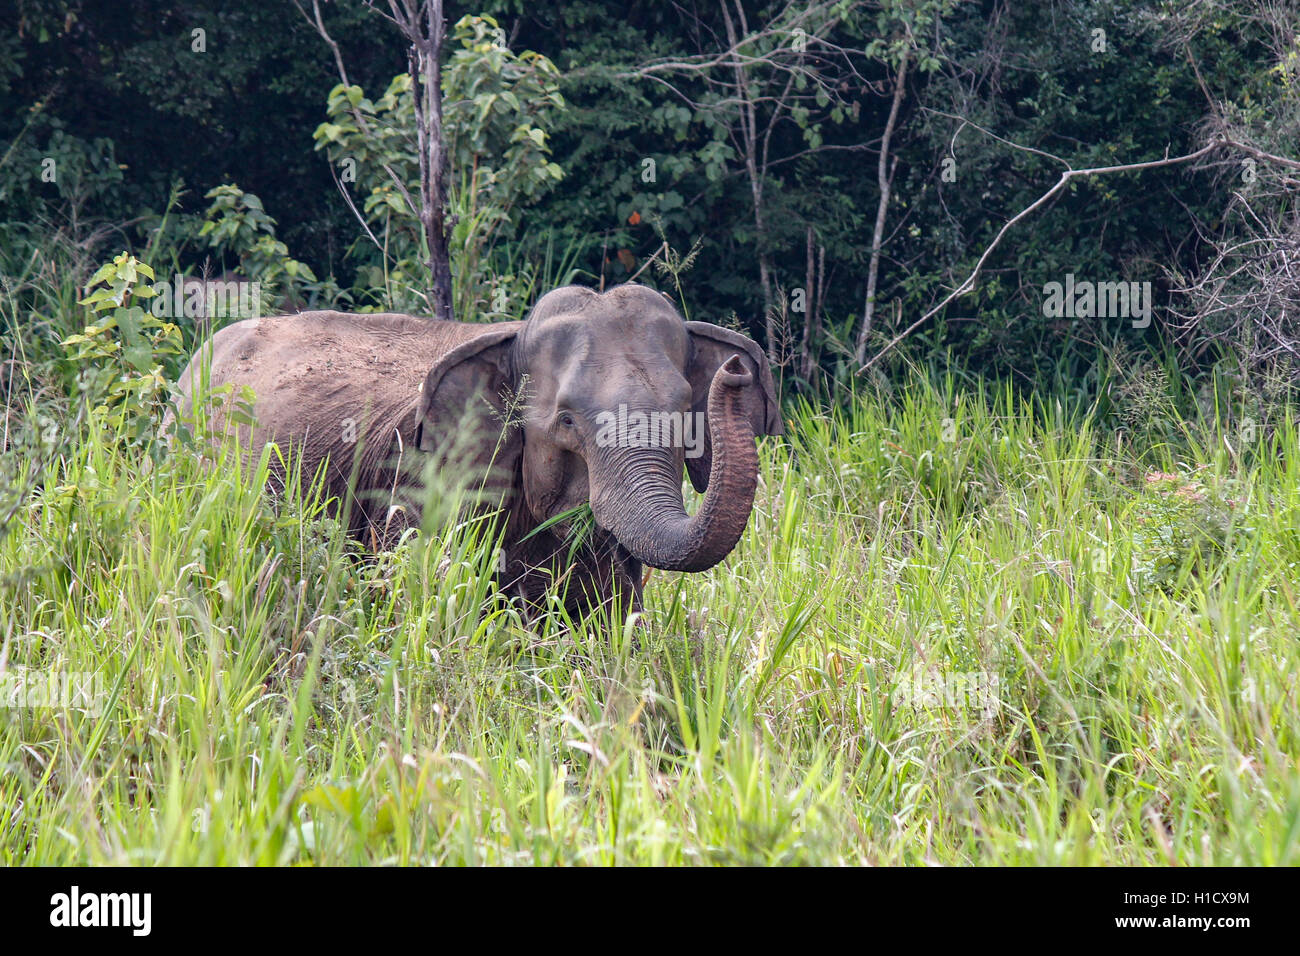 Subespecie del elefante asiático, el elefante de Sri Lanka (Elephas maximus maximus) Levantamiento de tronco Foto de stock